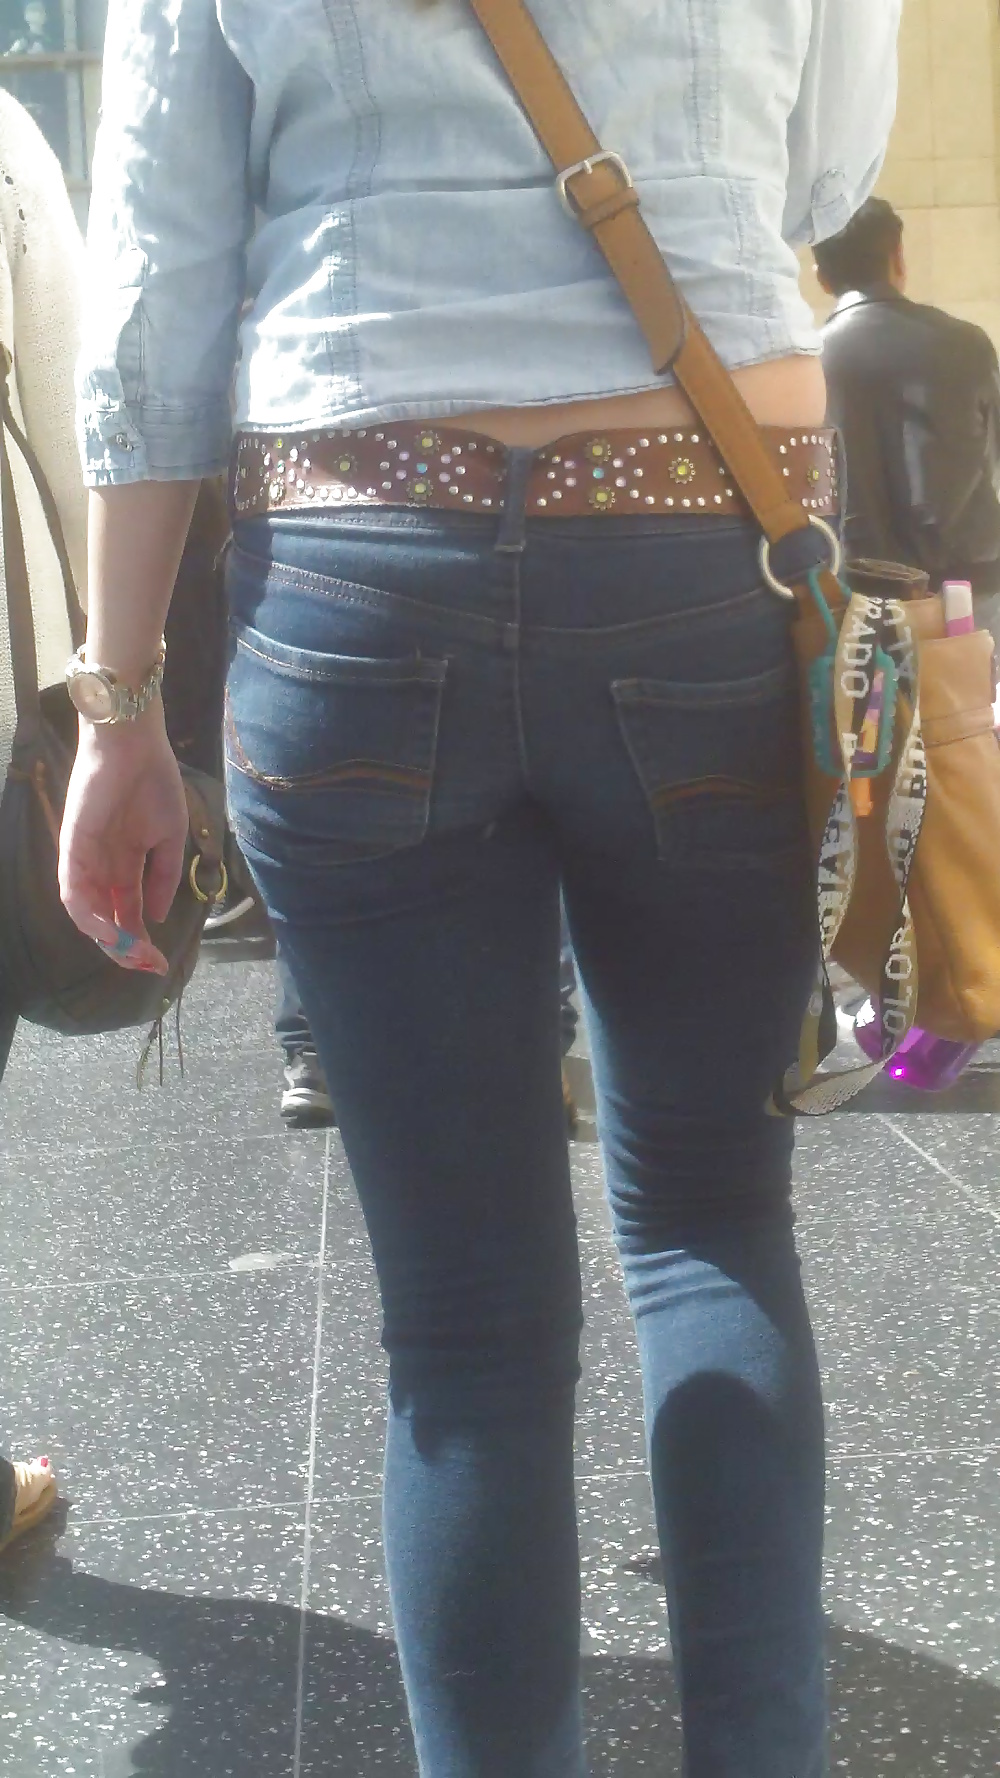 Popular teen girls ass & butt in jeans part 3 #25400894